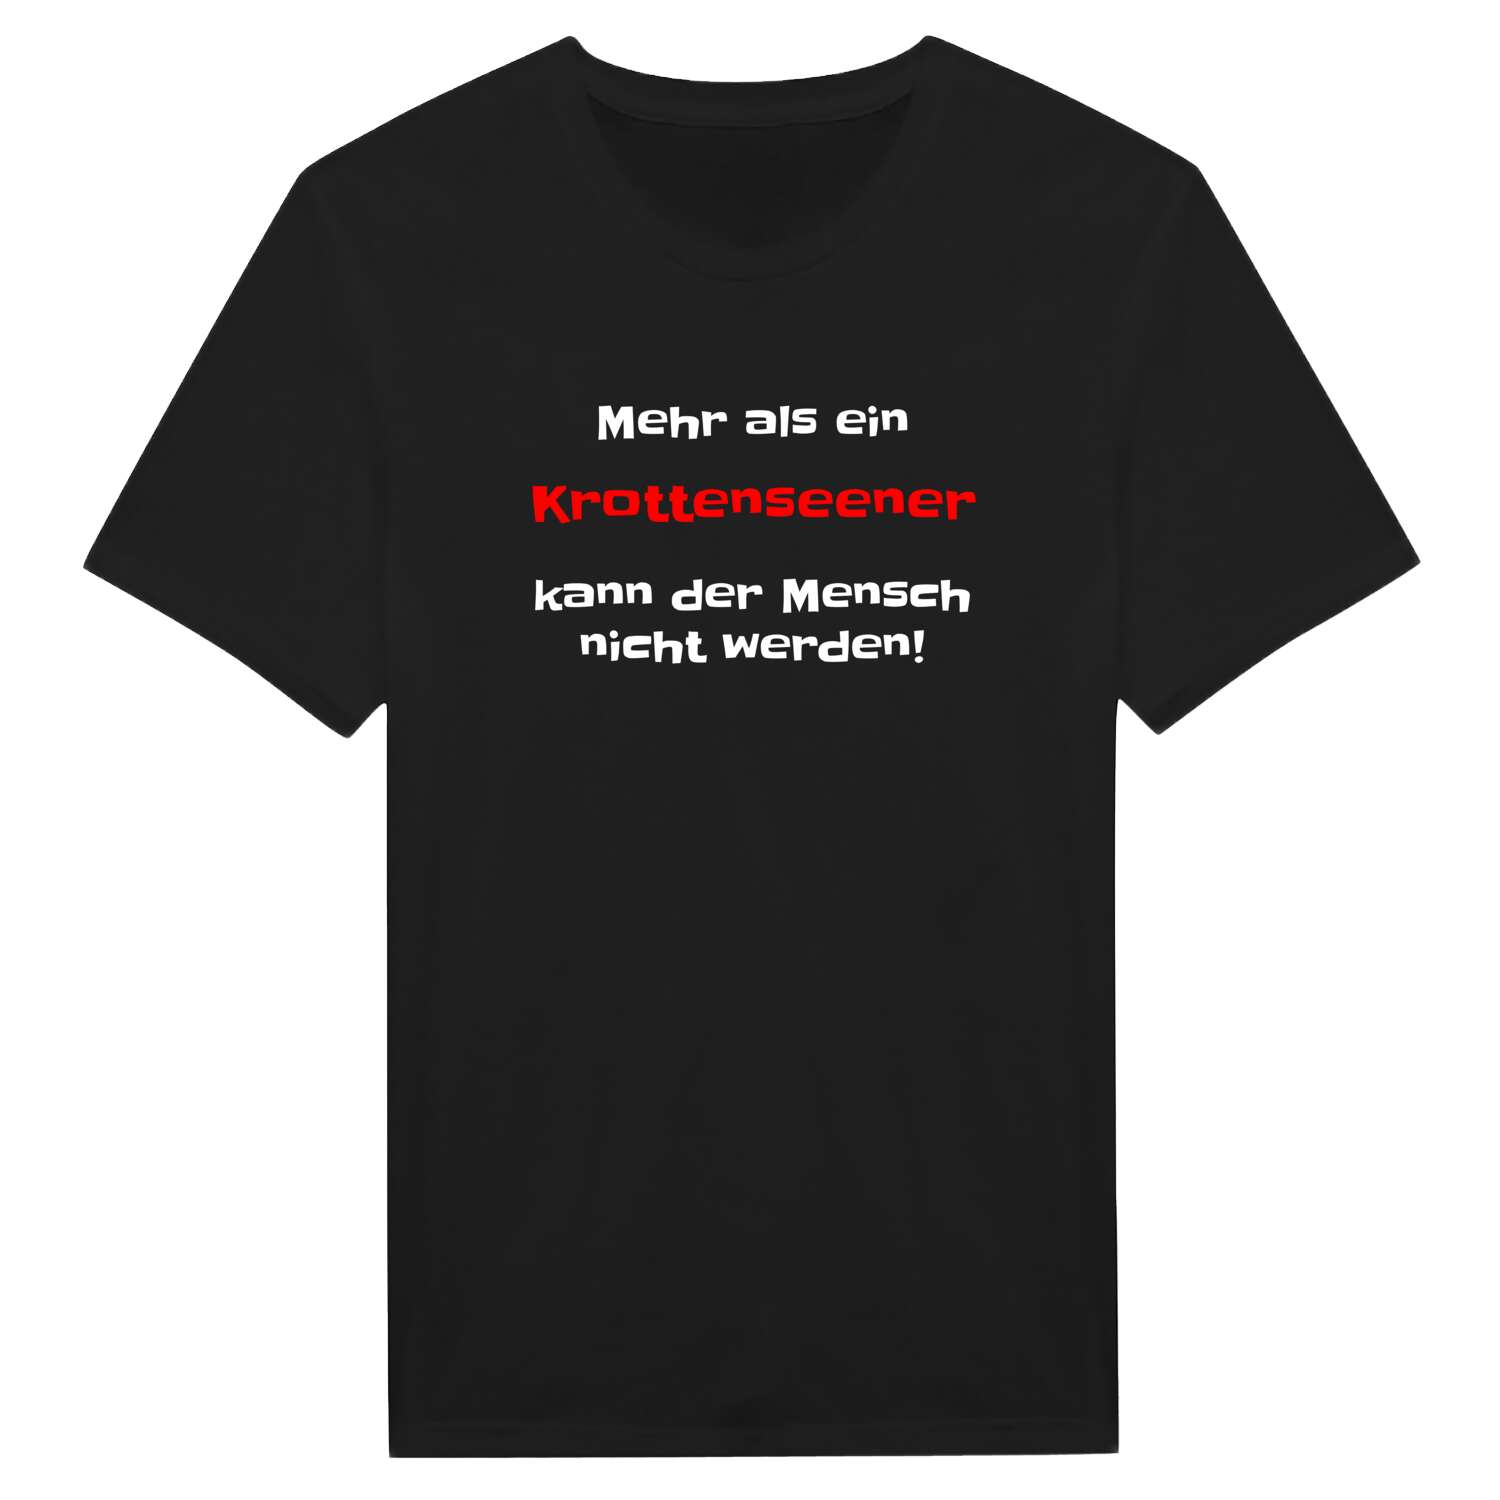 Krottensee T-Shirt »Mehr als ein«